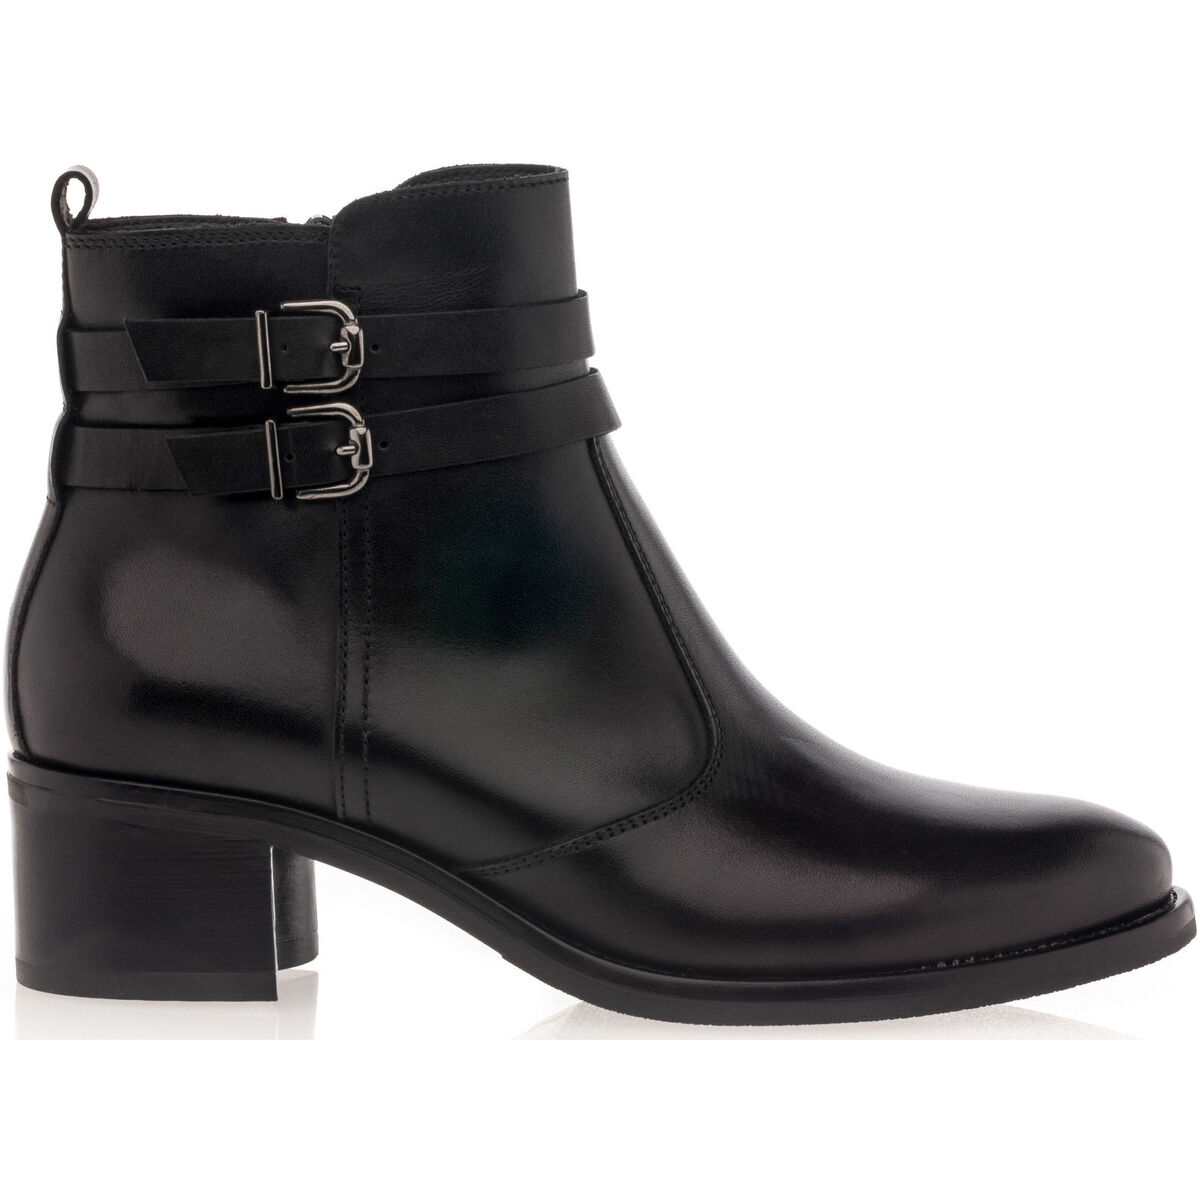 Chaussures Femme ON Cloudaway Running Womens Shoes Boots / bottines Femme Noir Noir